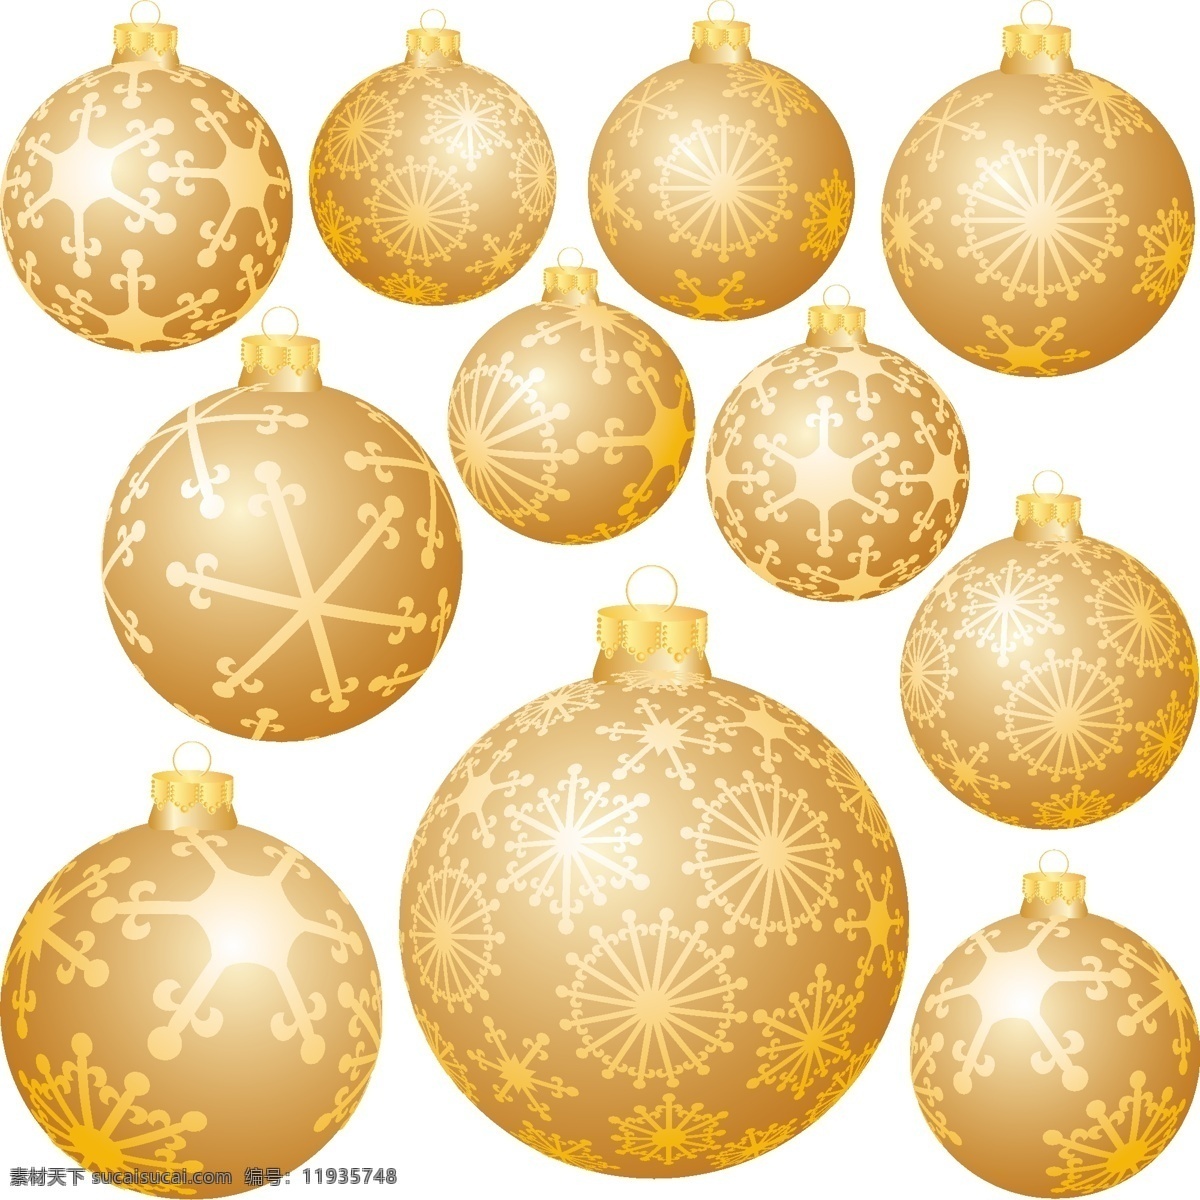 雪花 圣诞 装饰 球 矢量 吊球 圣诞节 雪 装饰球 挂球 矢量图 其他矢量图